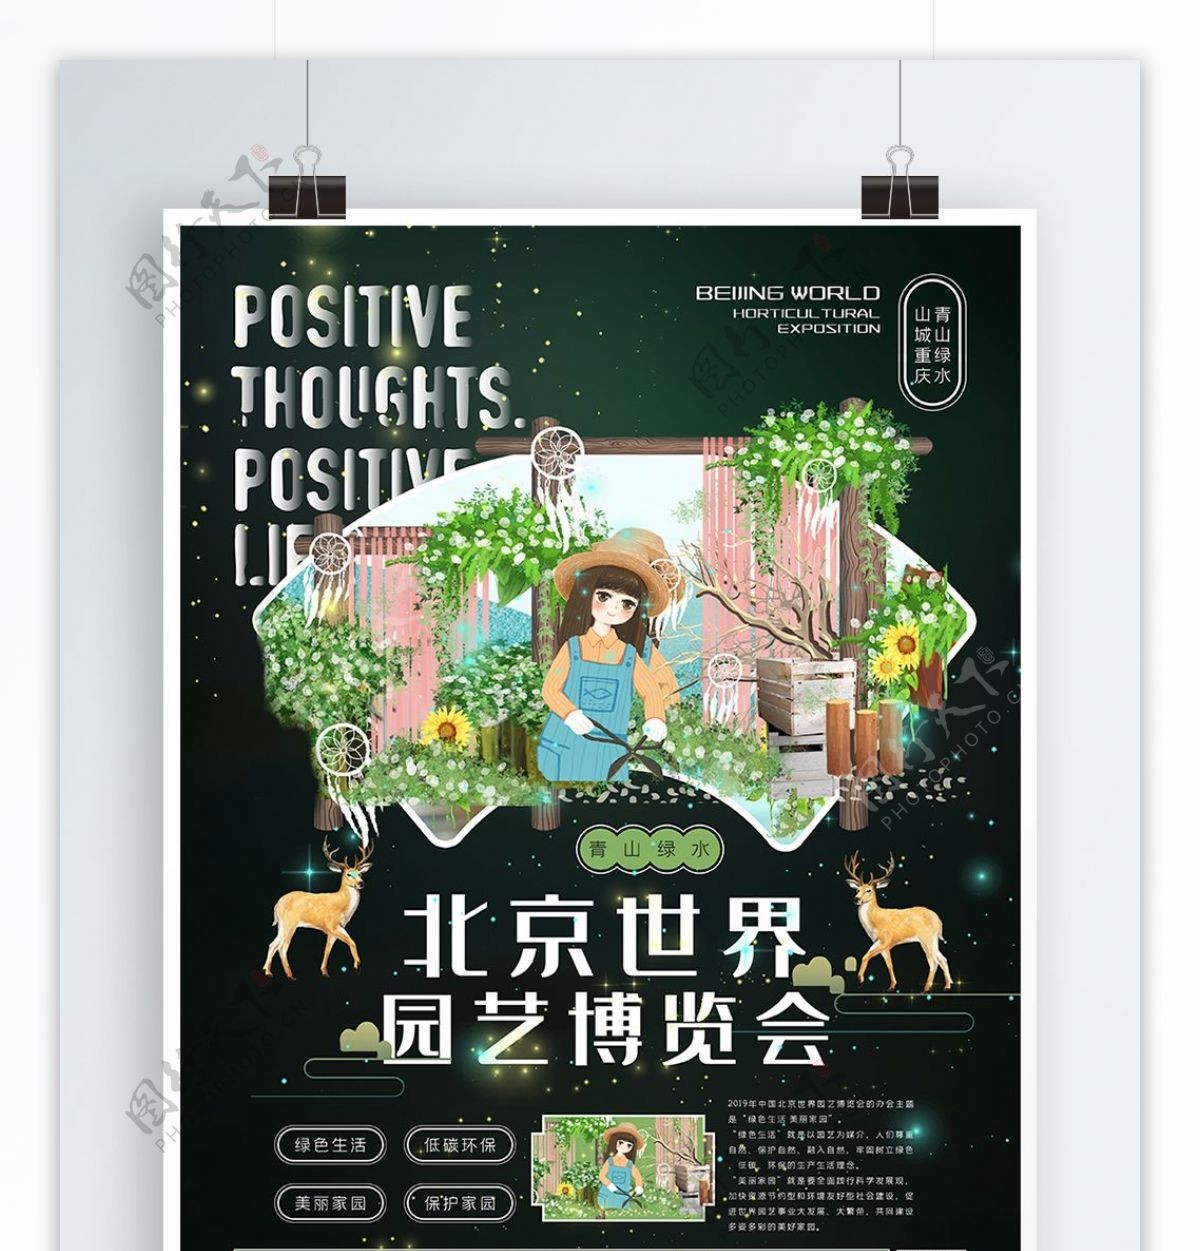 简约北京世界园艺博览会海报